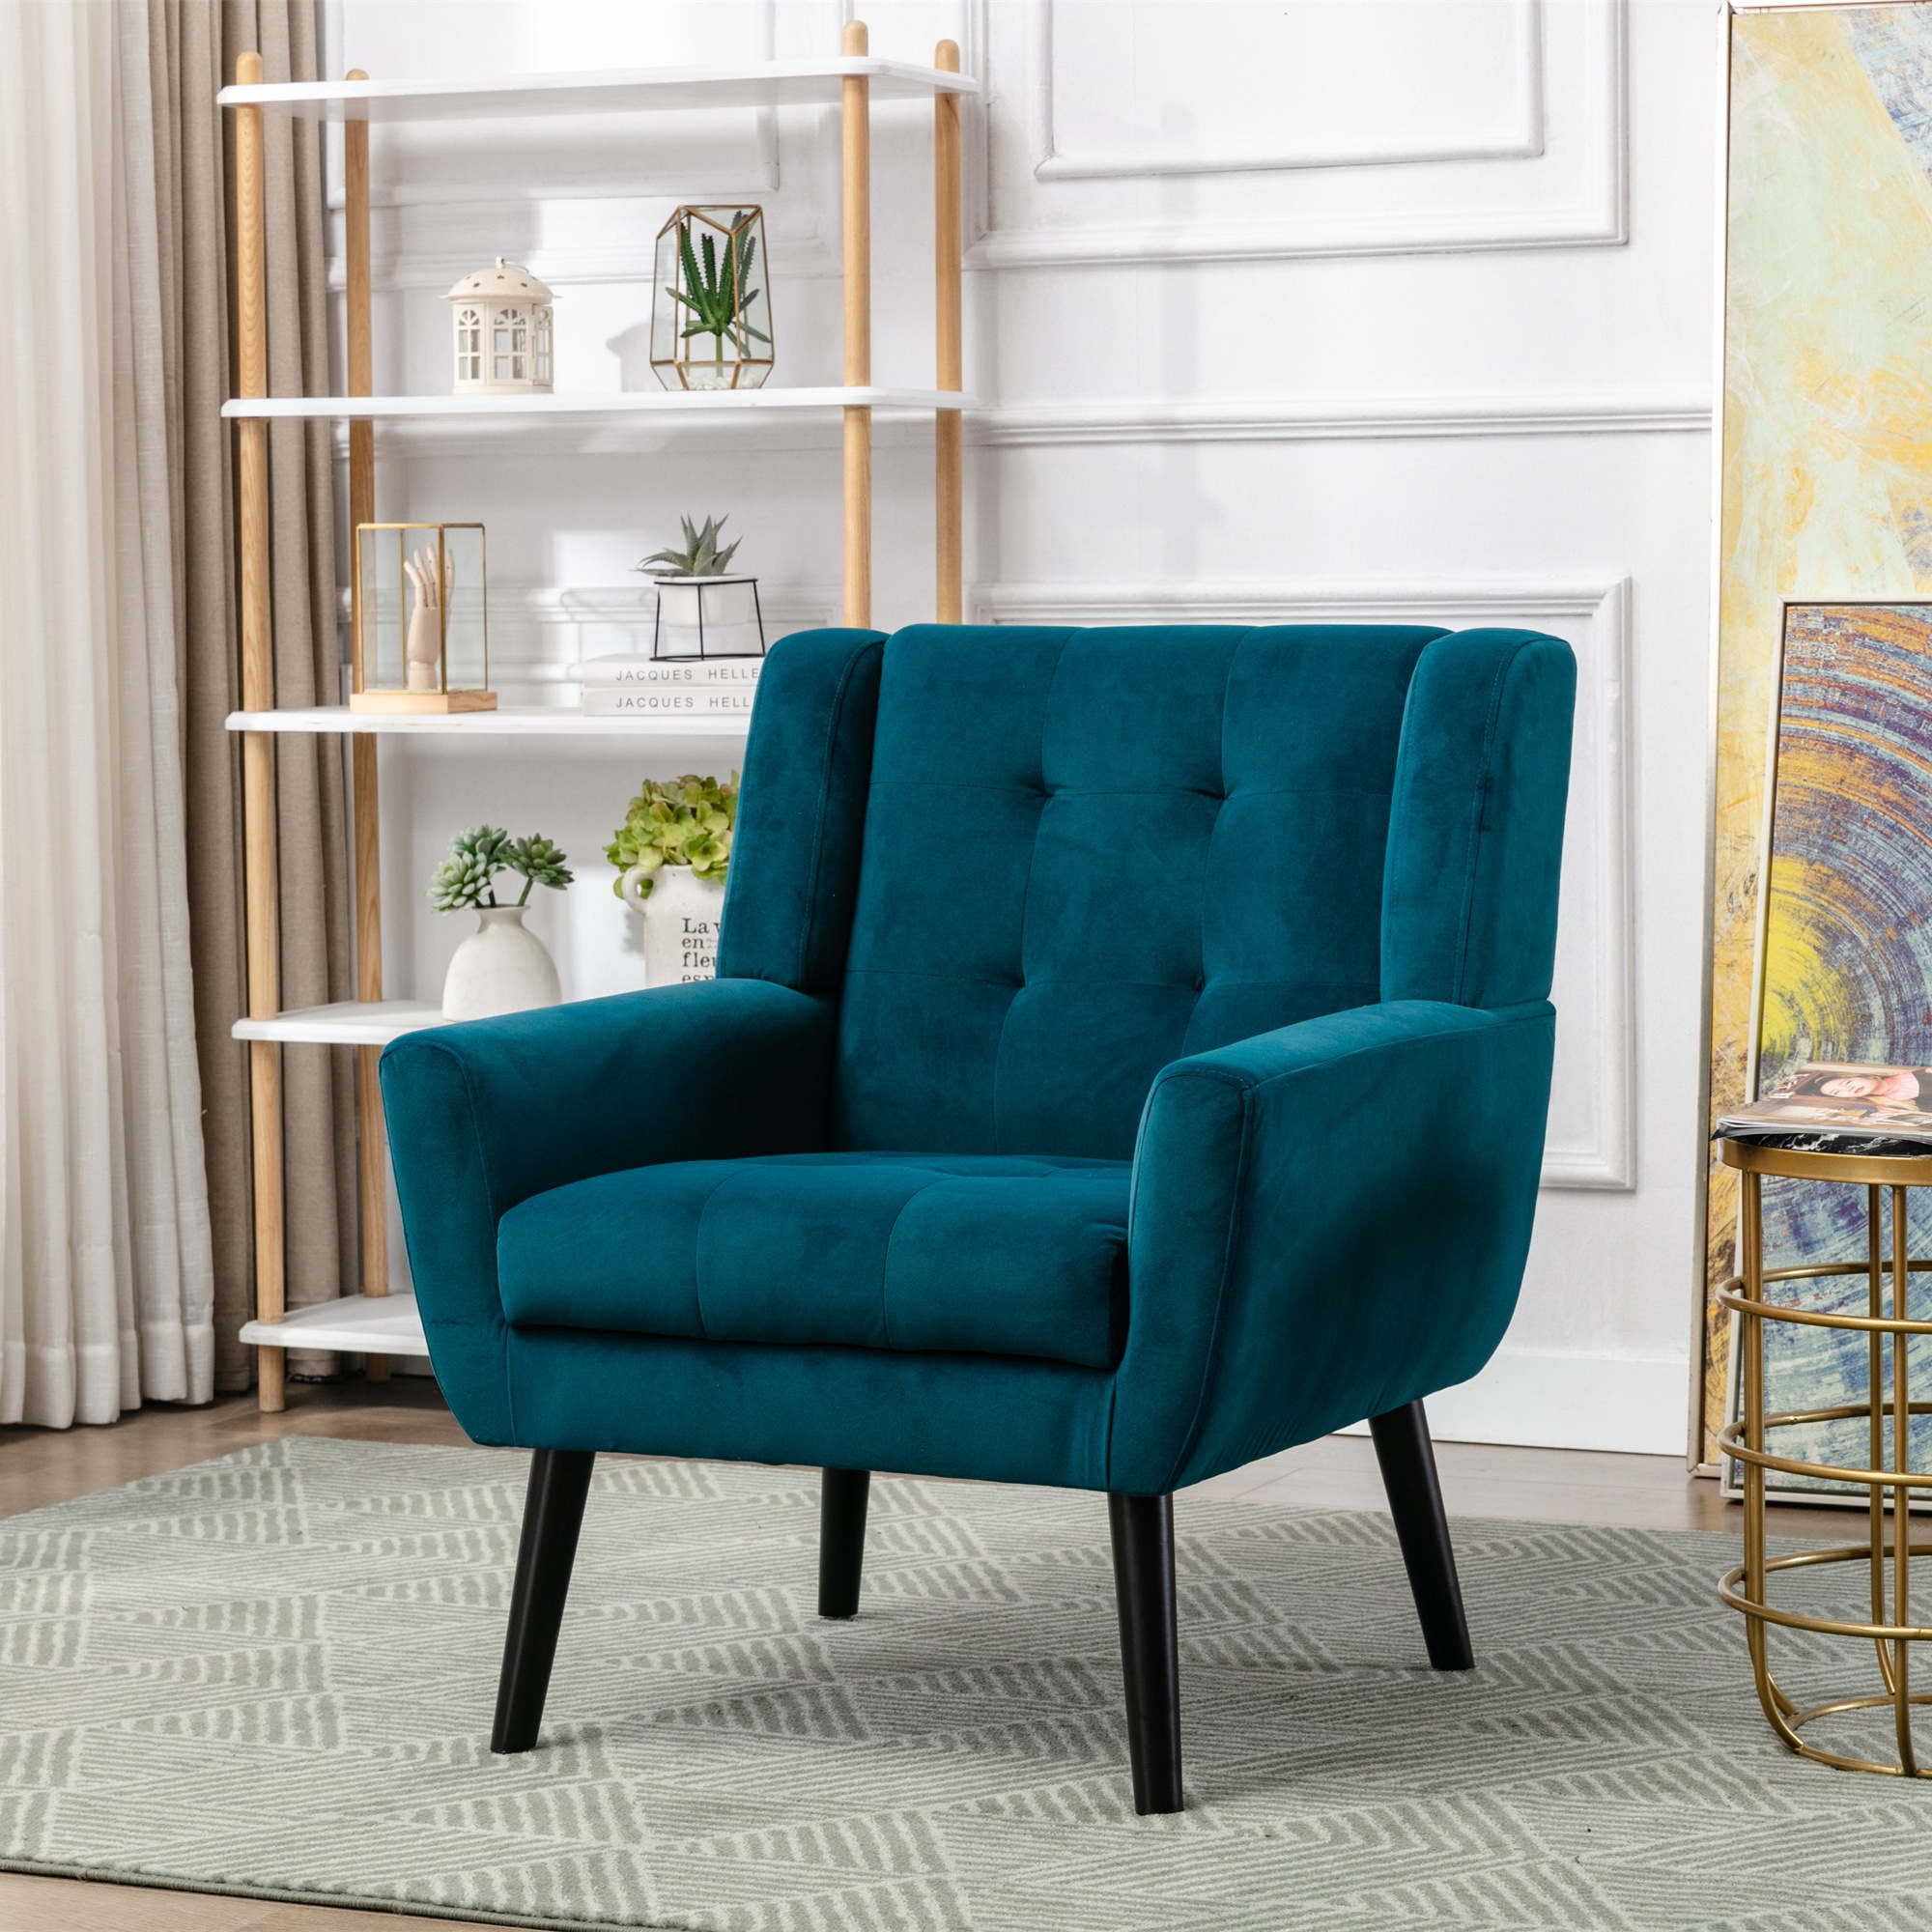 Single Chair Modern Soft Linen Material